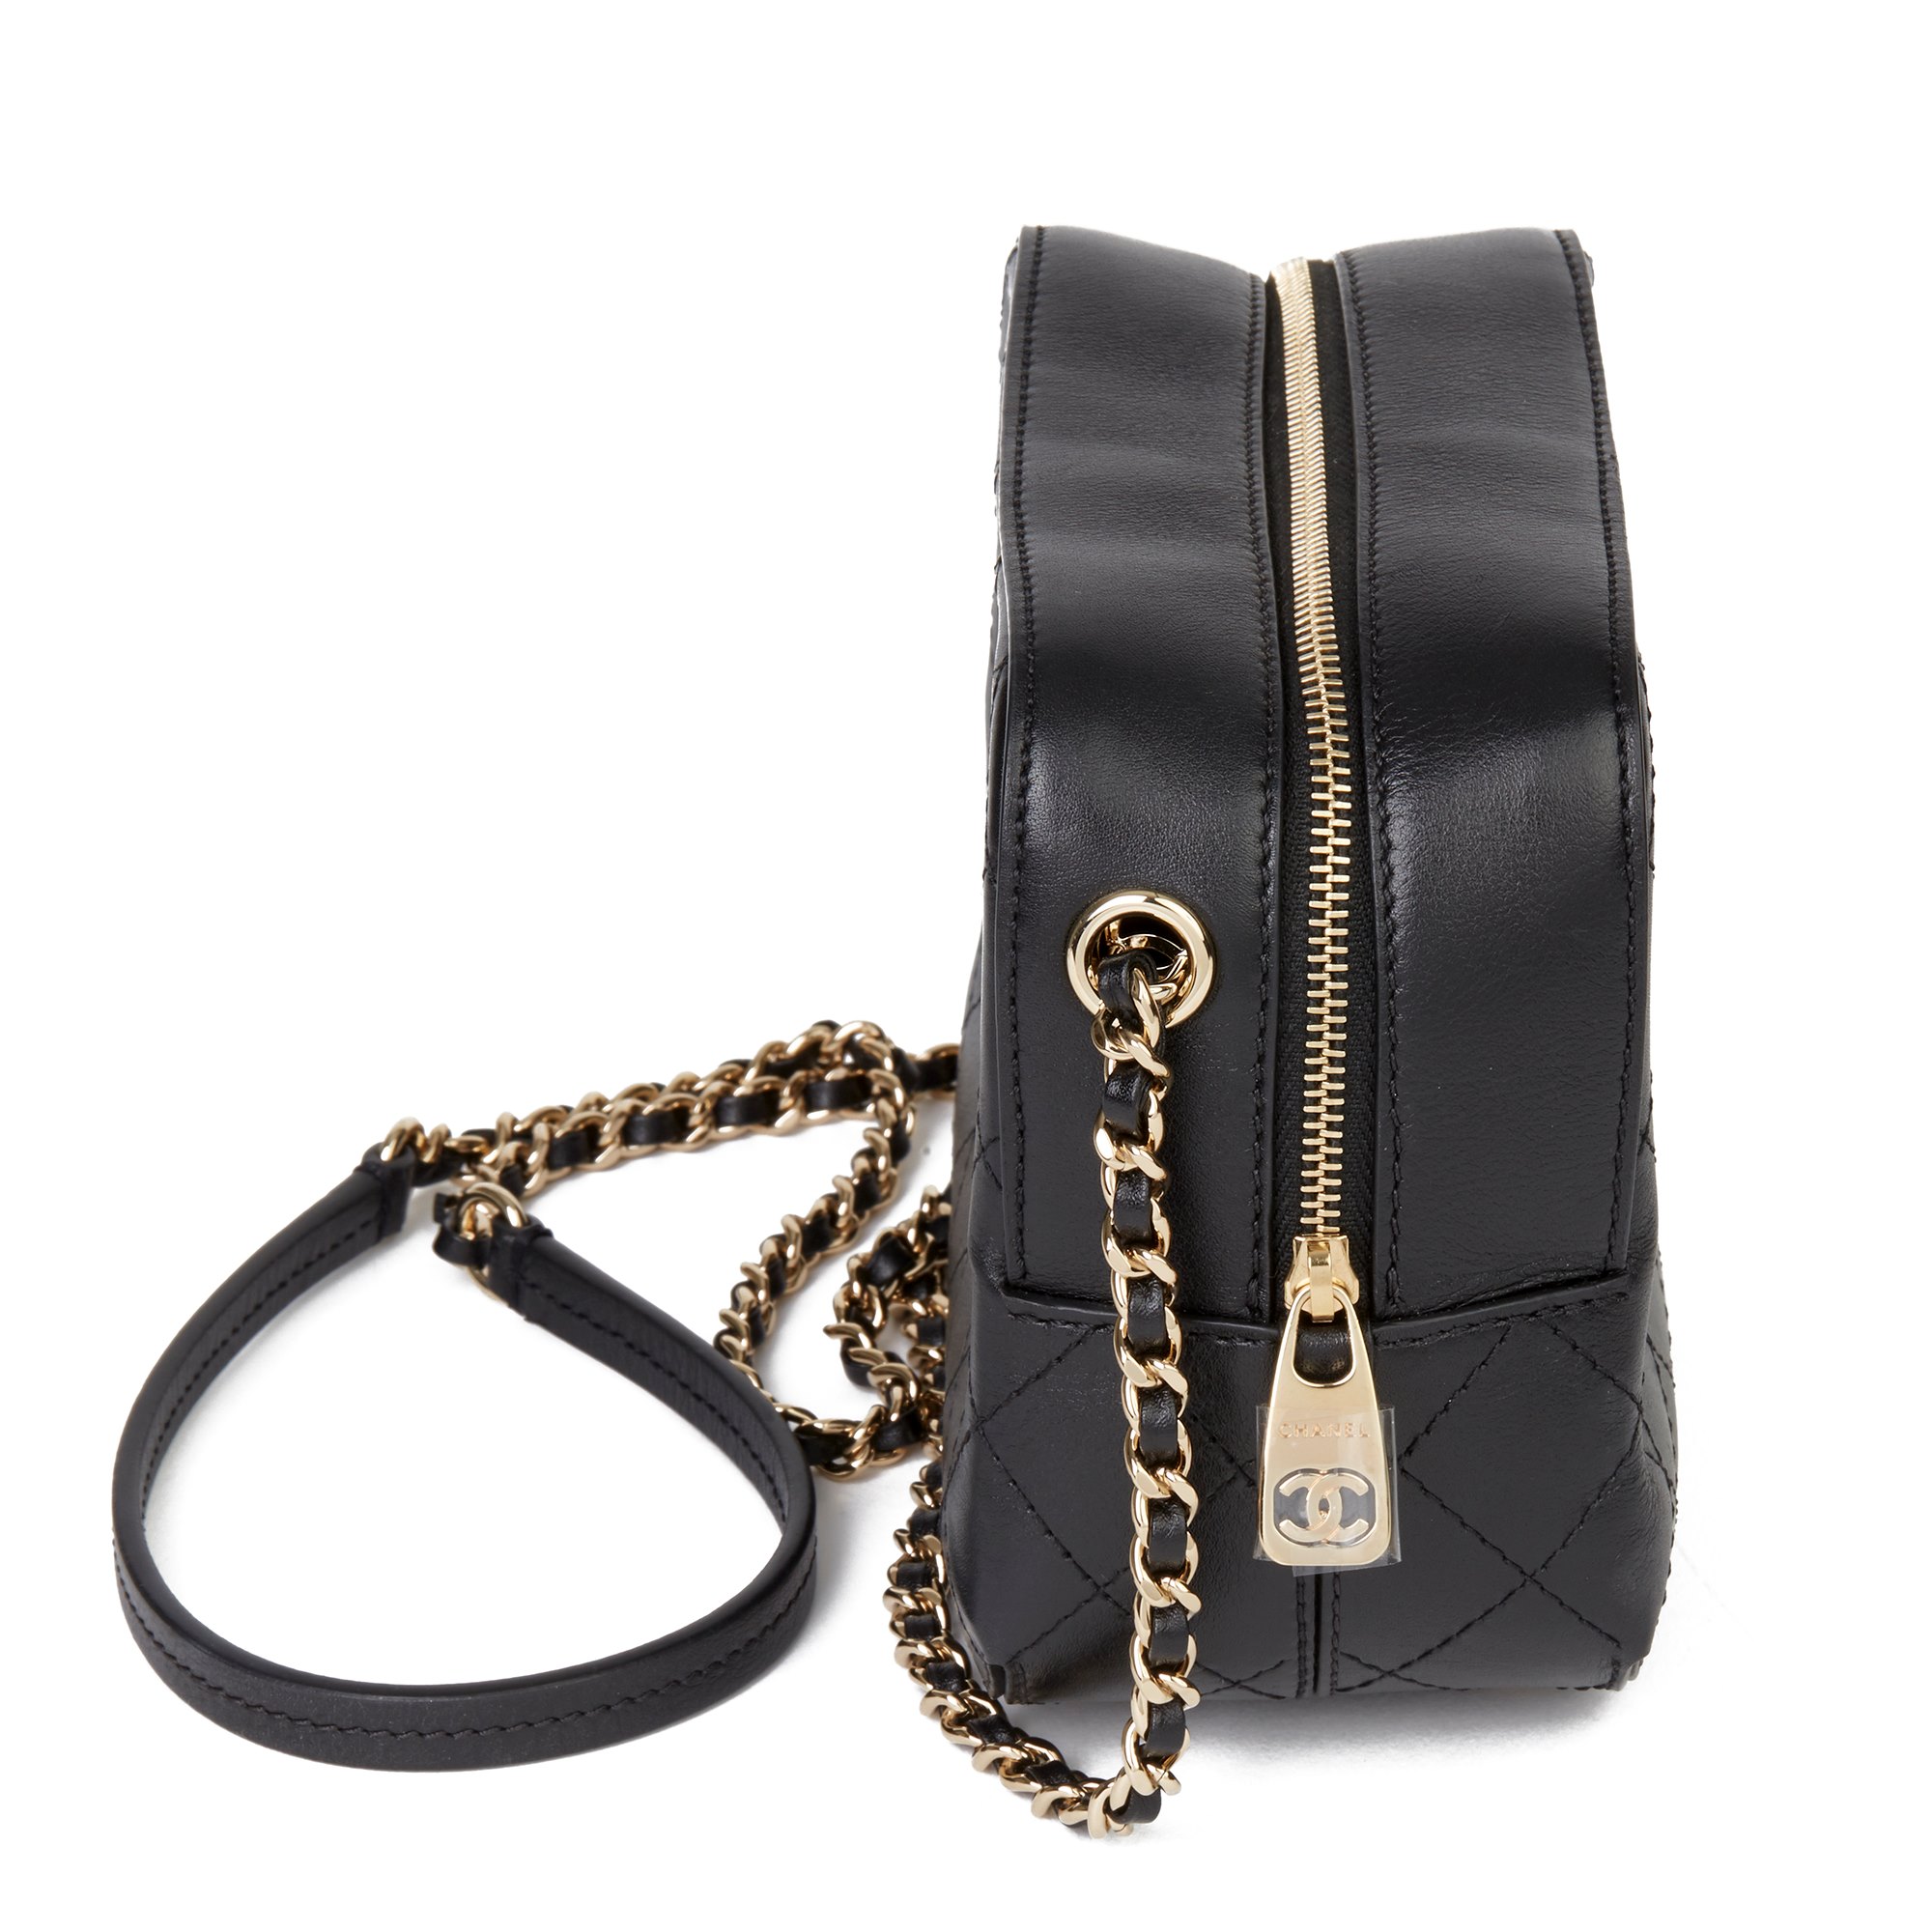 Chanel Mini Classic Camera Bag 2019 HB3613 | Second Hand Handbags